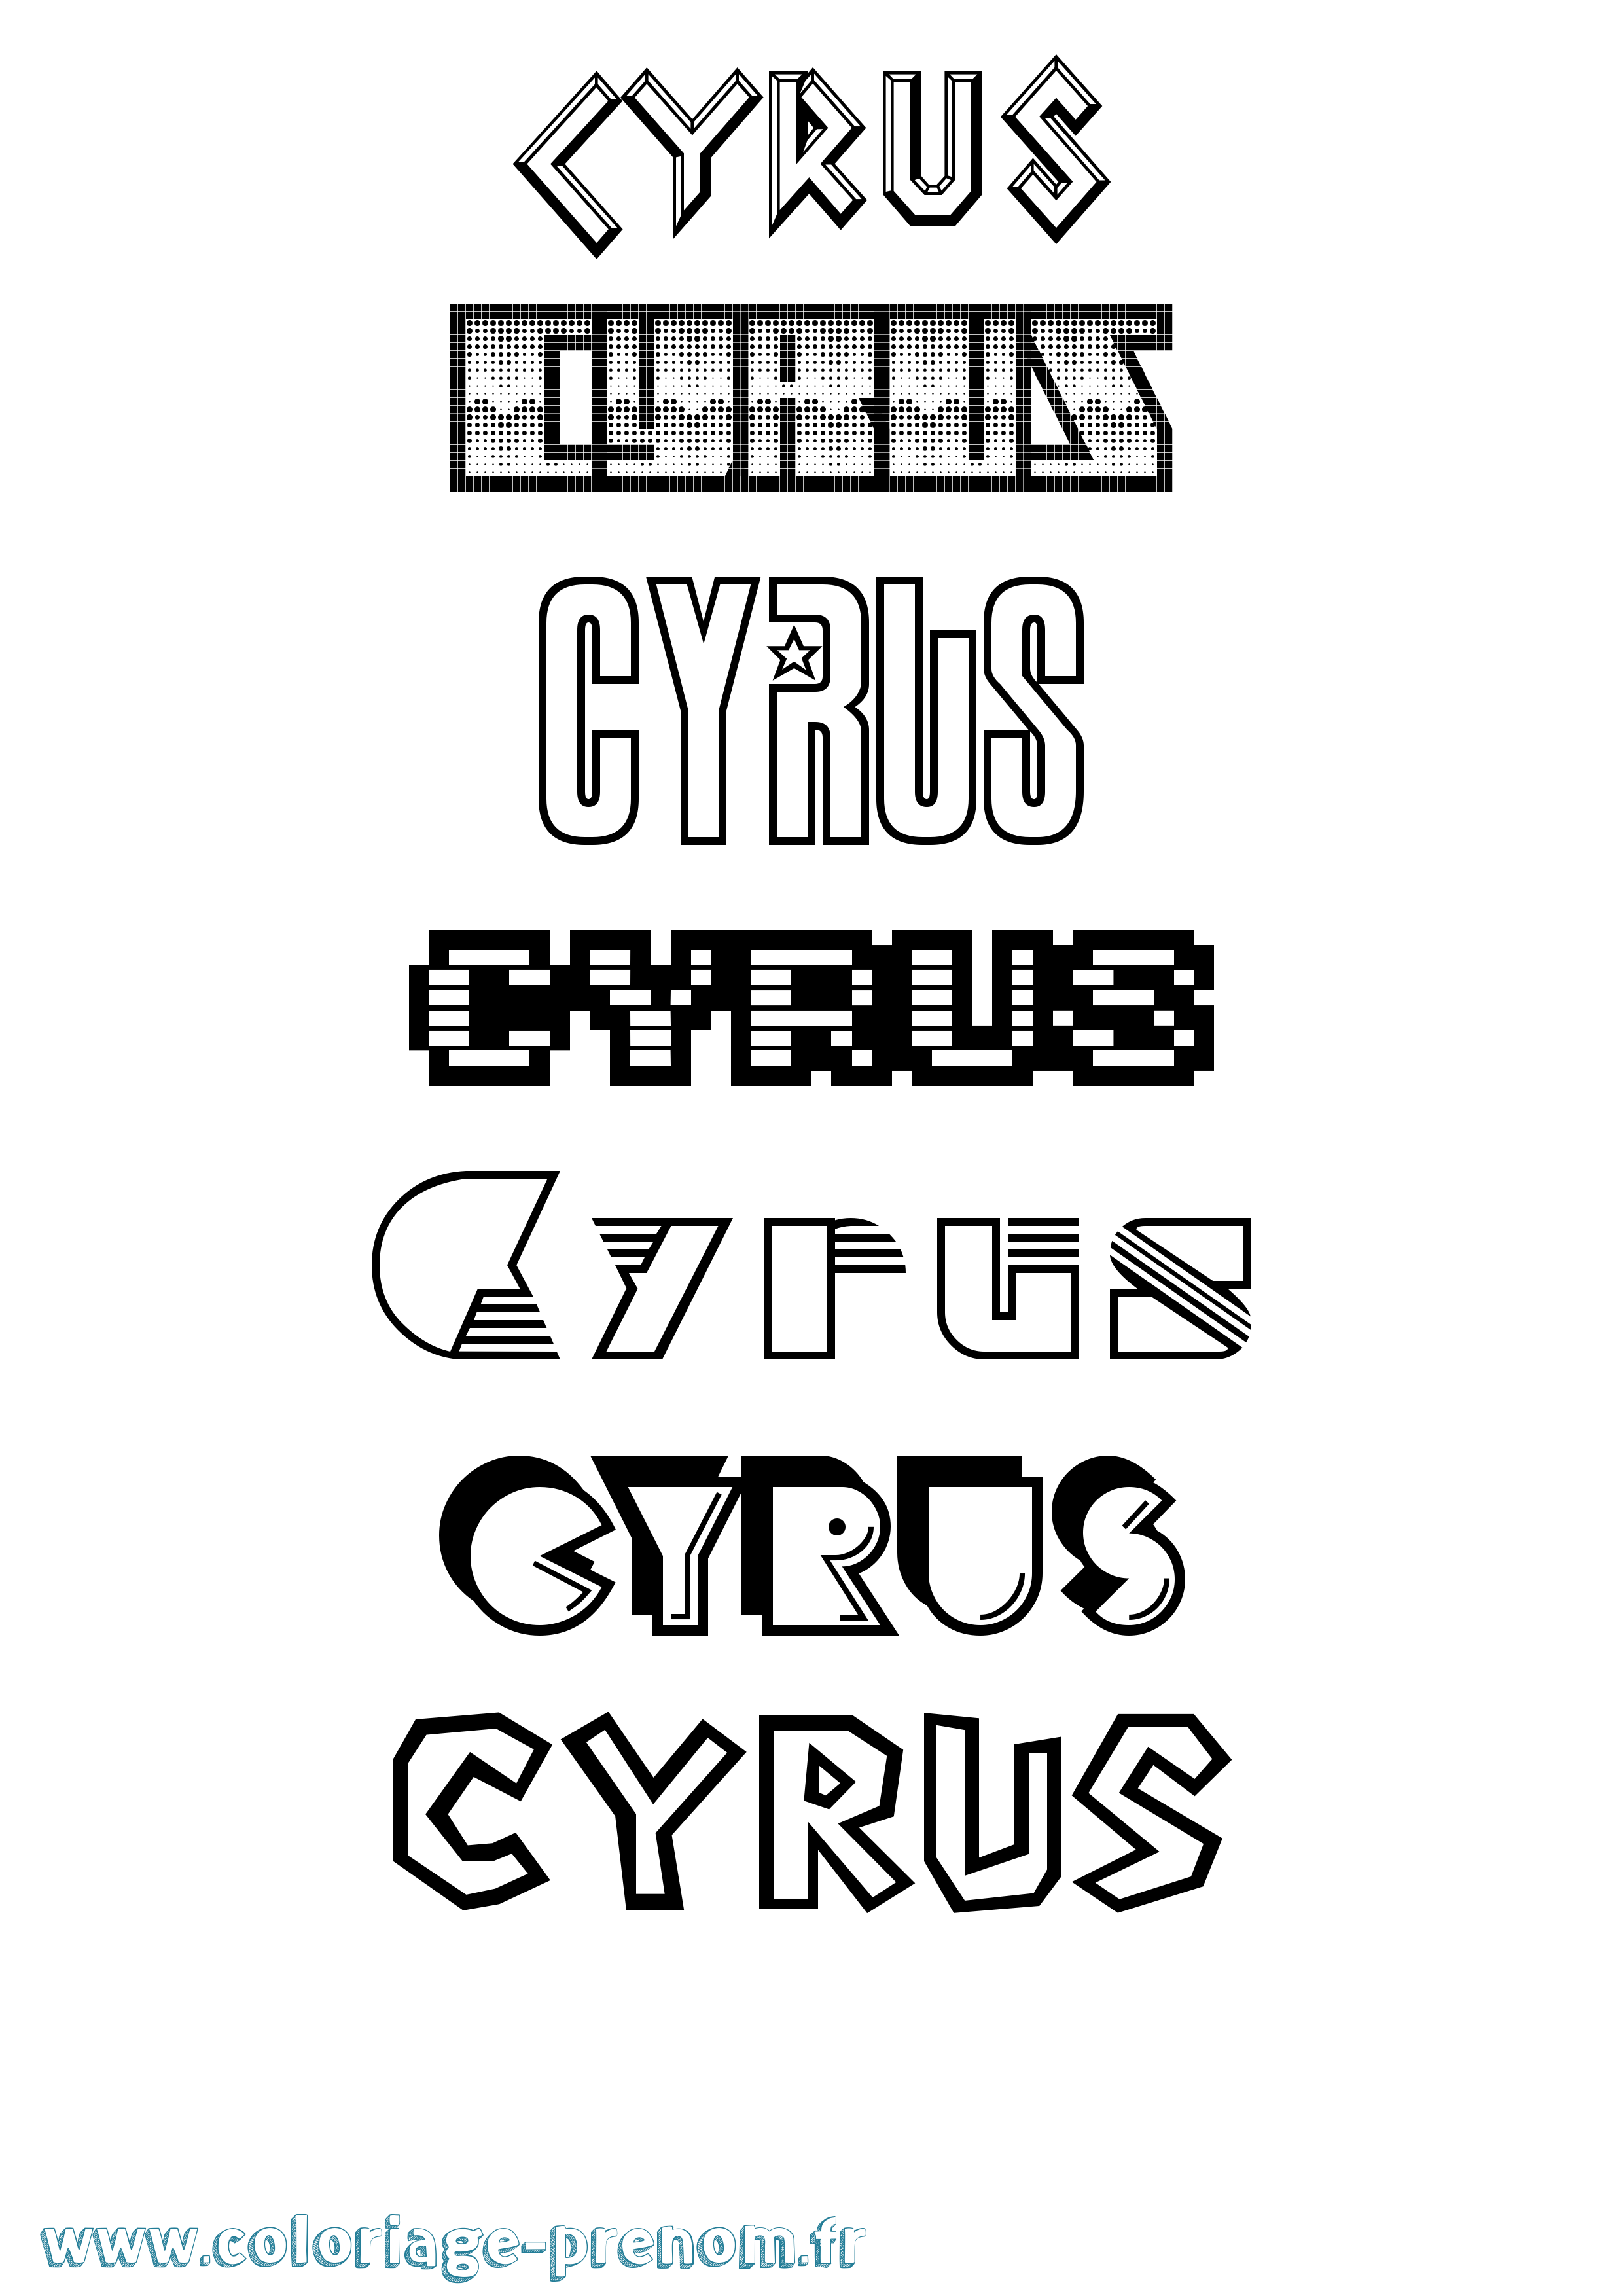 Coloriage prénom Cyrus Jeux Vidéos